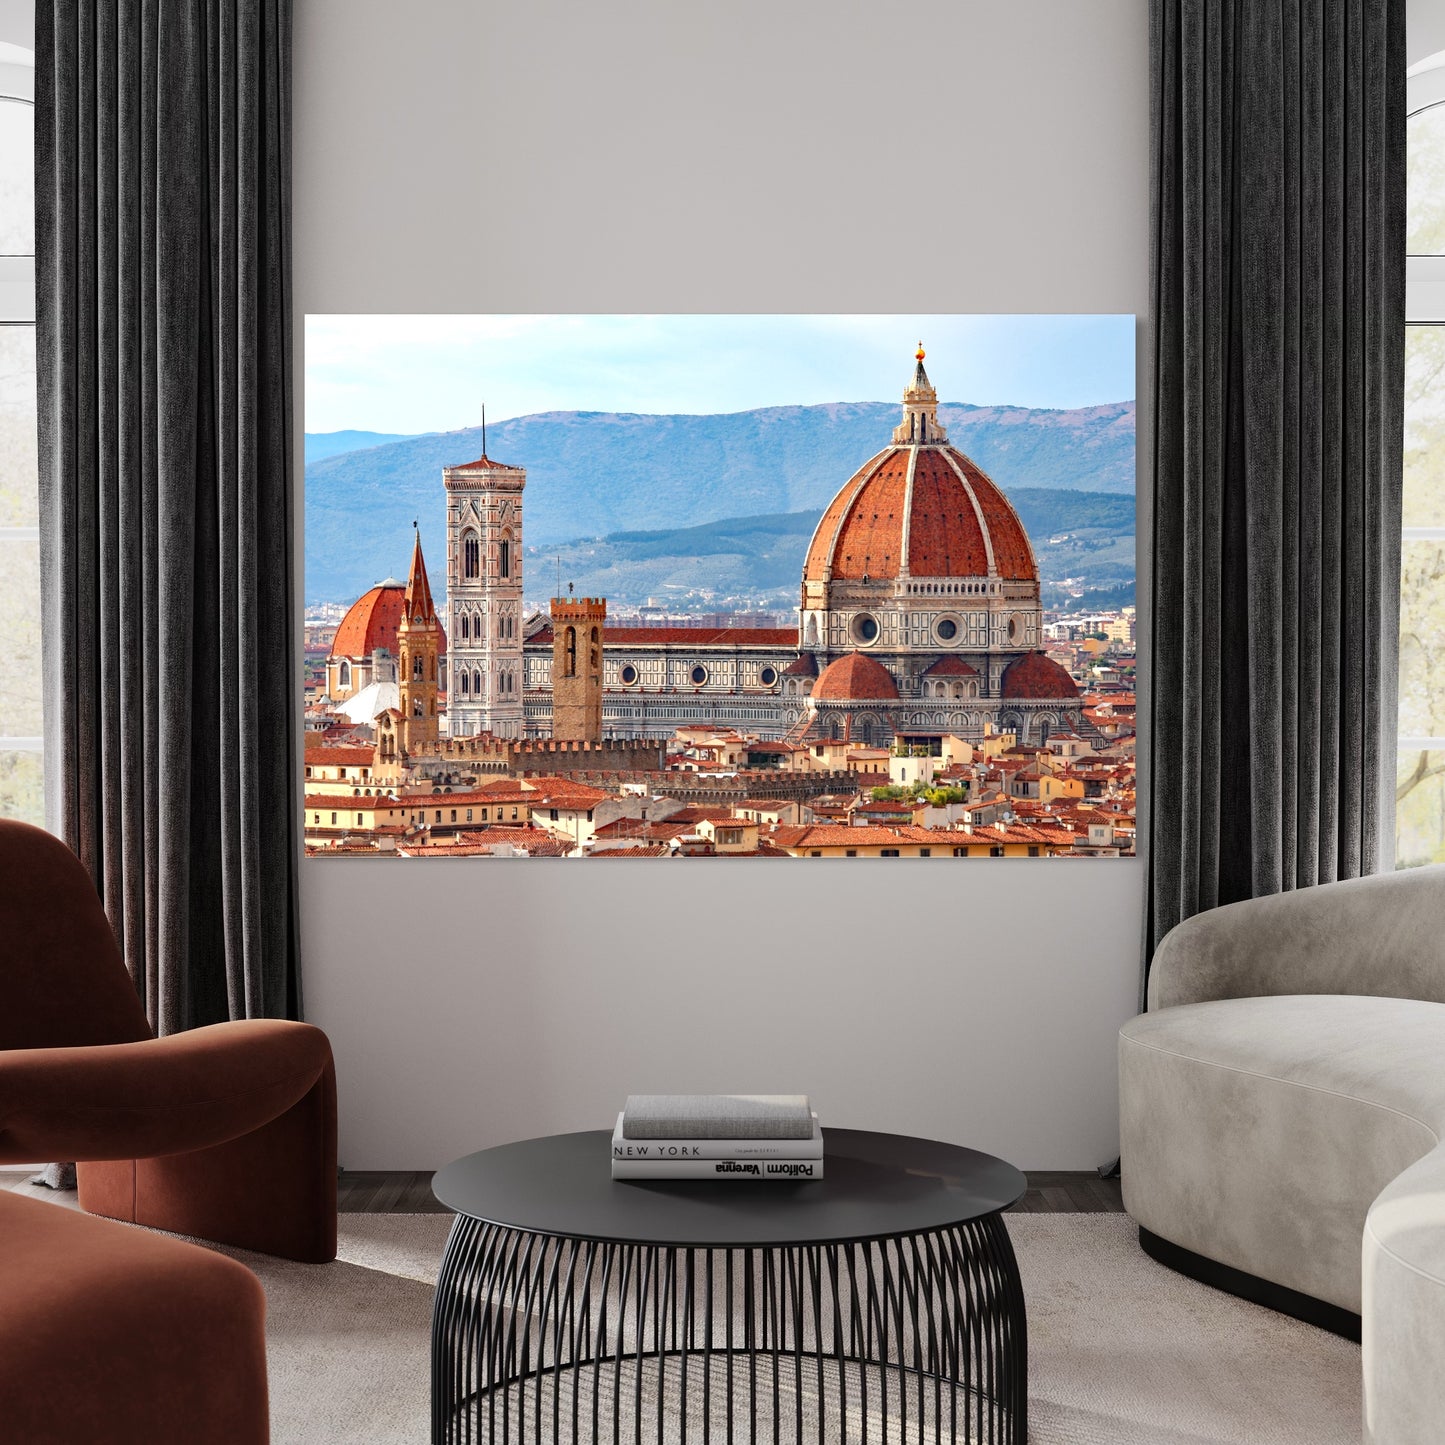 Le dôme de Brunelleschi